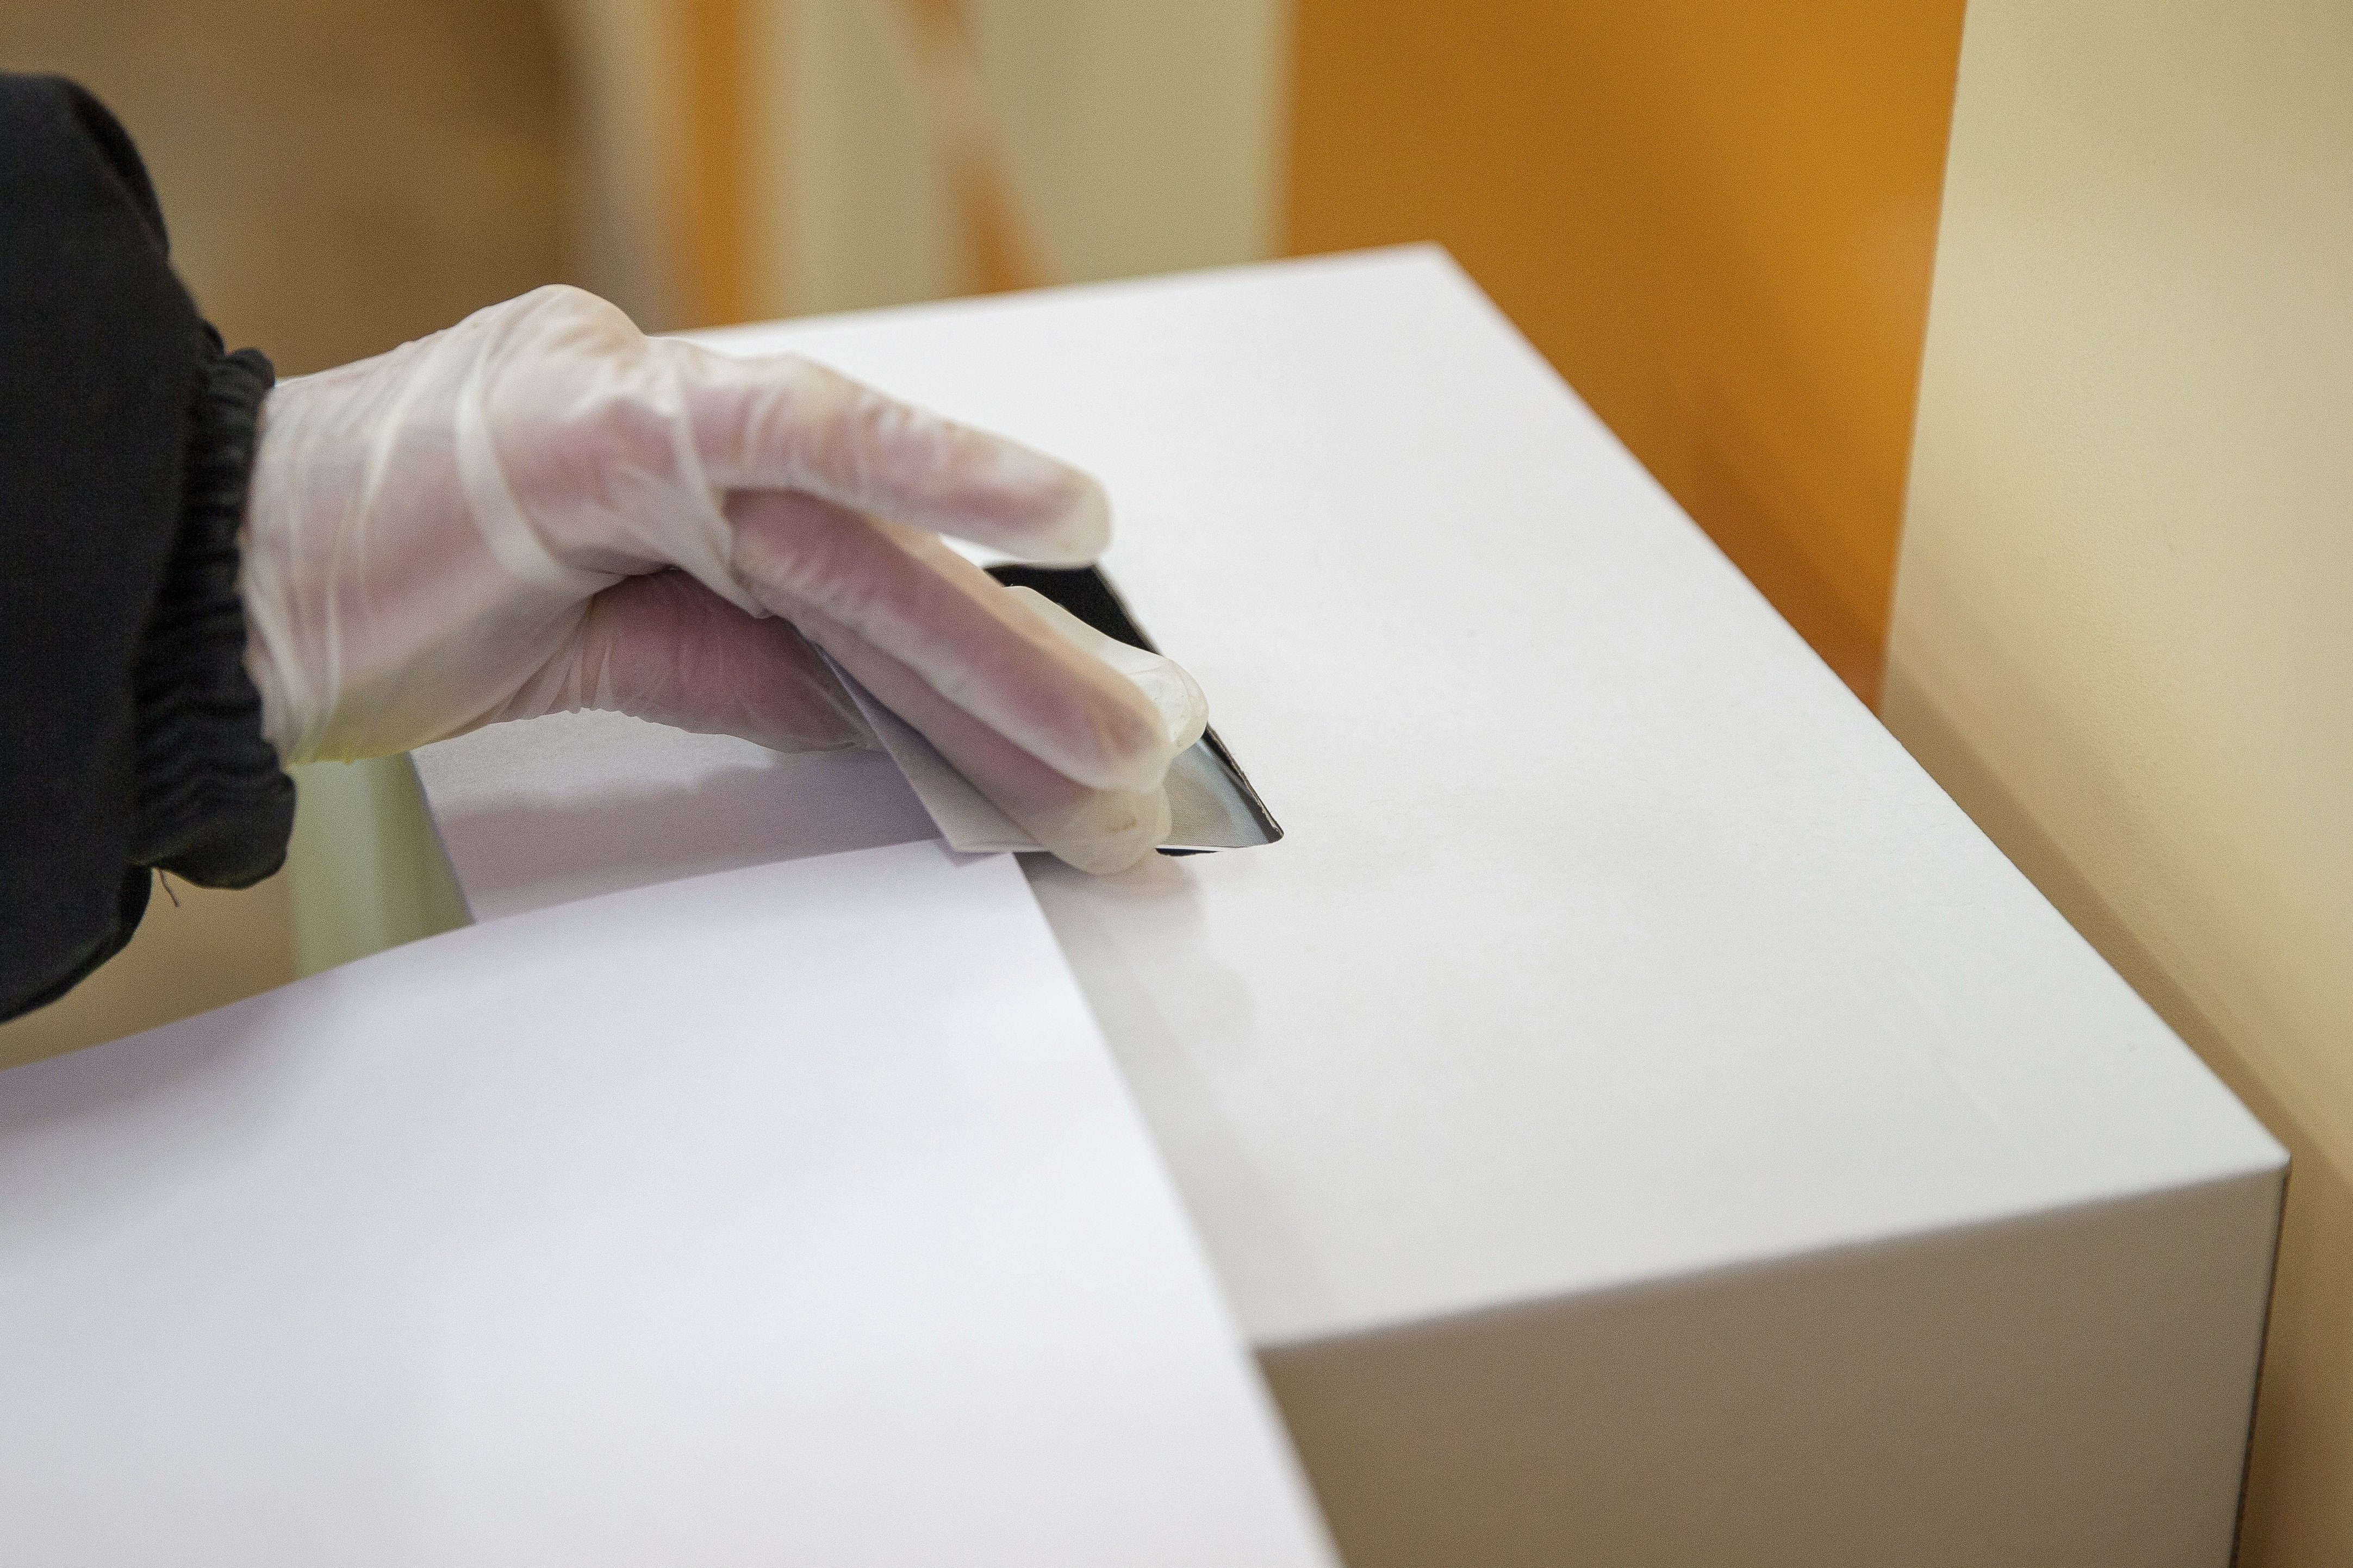 14 населени места провеждат местни избори днес 3 октомври   В